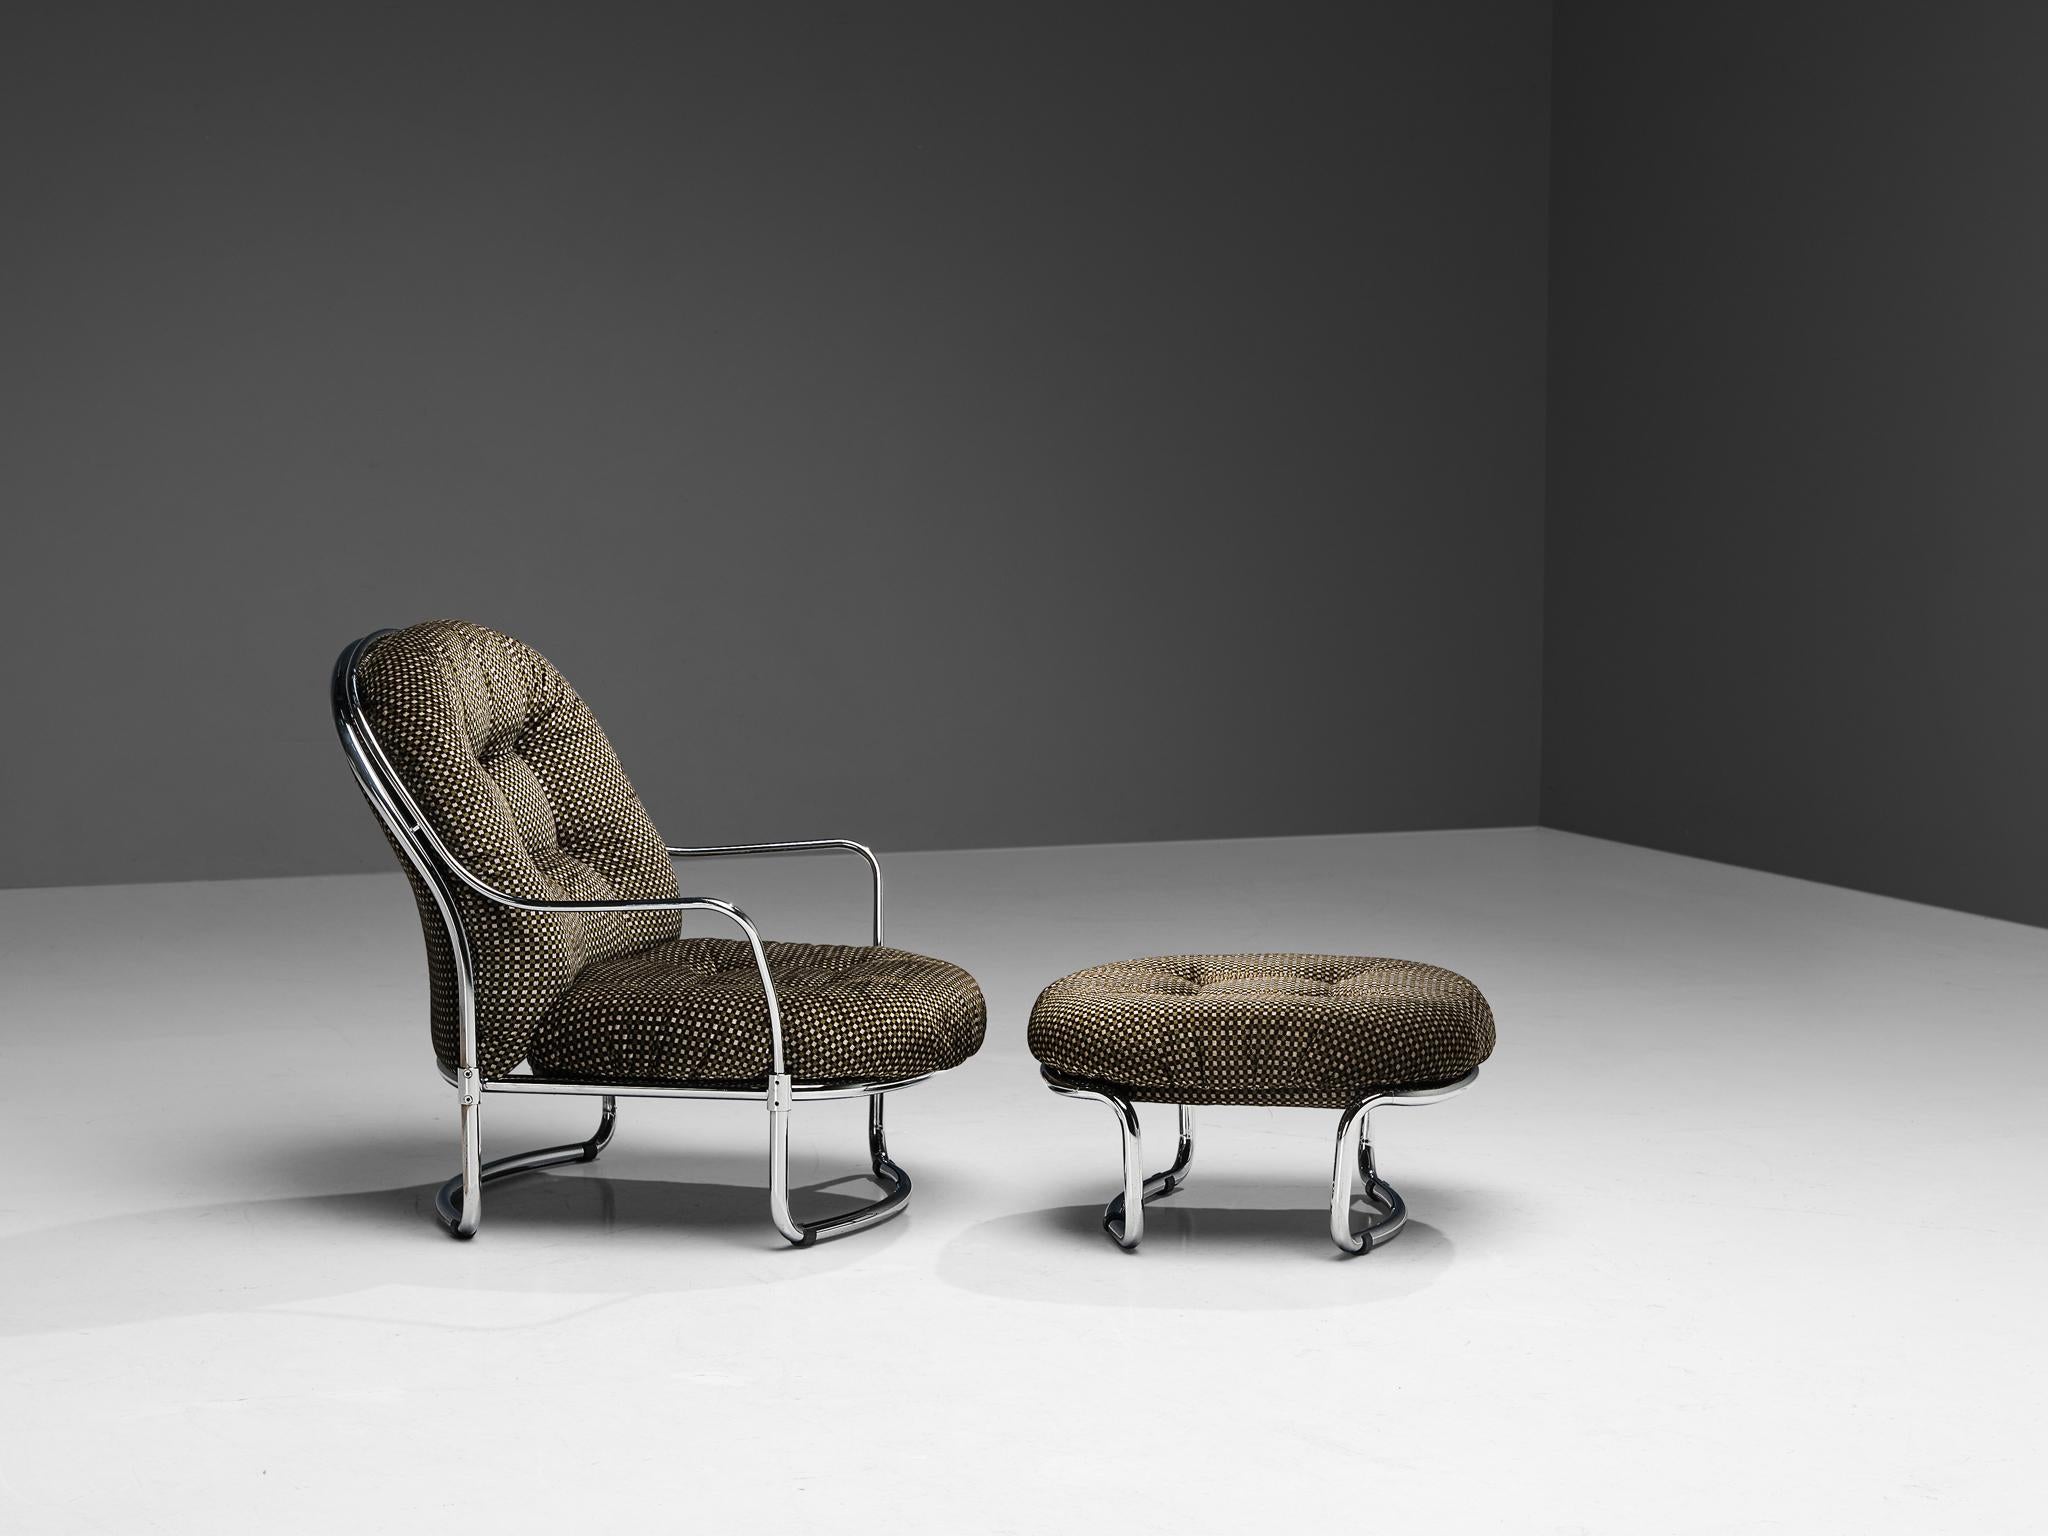 Carlo De Carli pour Cinova, chaise longue modèle '915' avec ottoman, métal, chrome, tissu, Italie, 1969.

Elegant fauteuil tubulaire avec ottoman conçu par Carlo De Carli en 1969, fabriqué par Cinova, Italie. Les deux pièces sont dotées d'un cadre